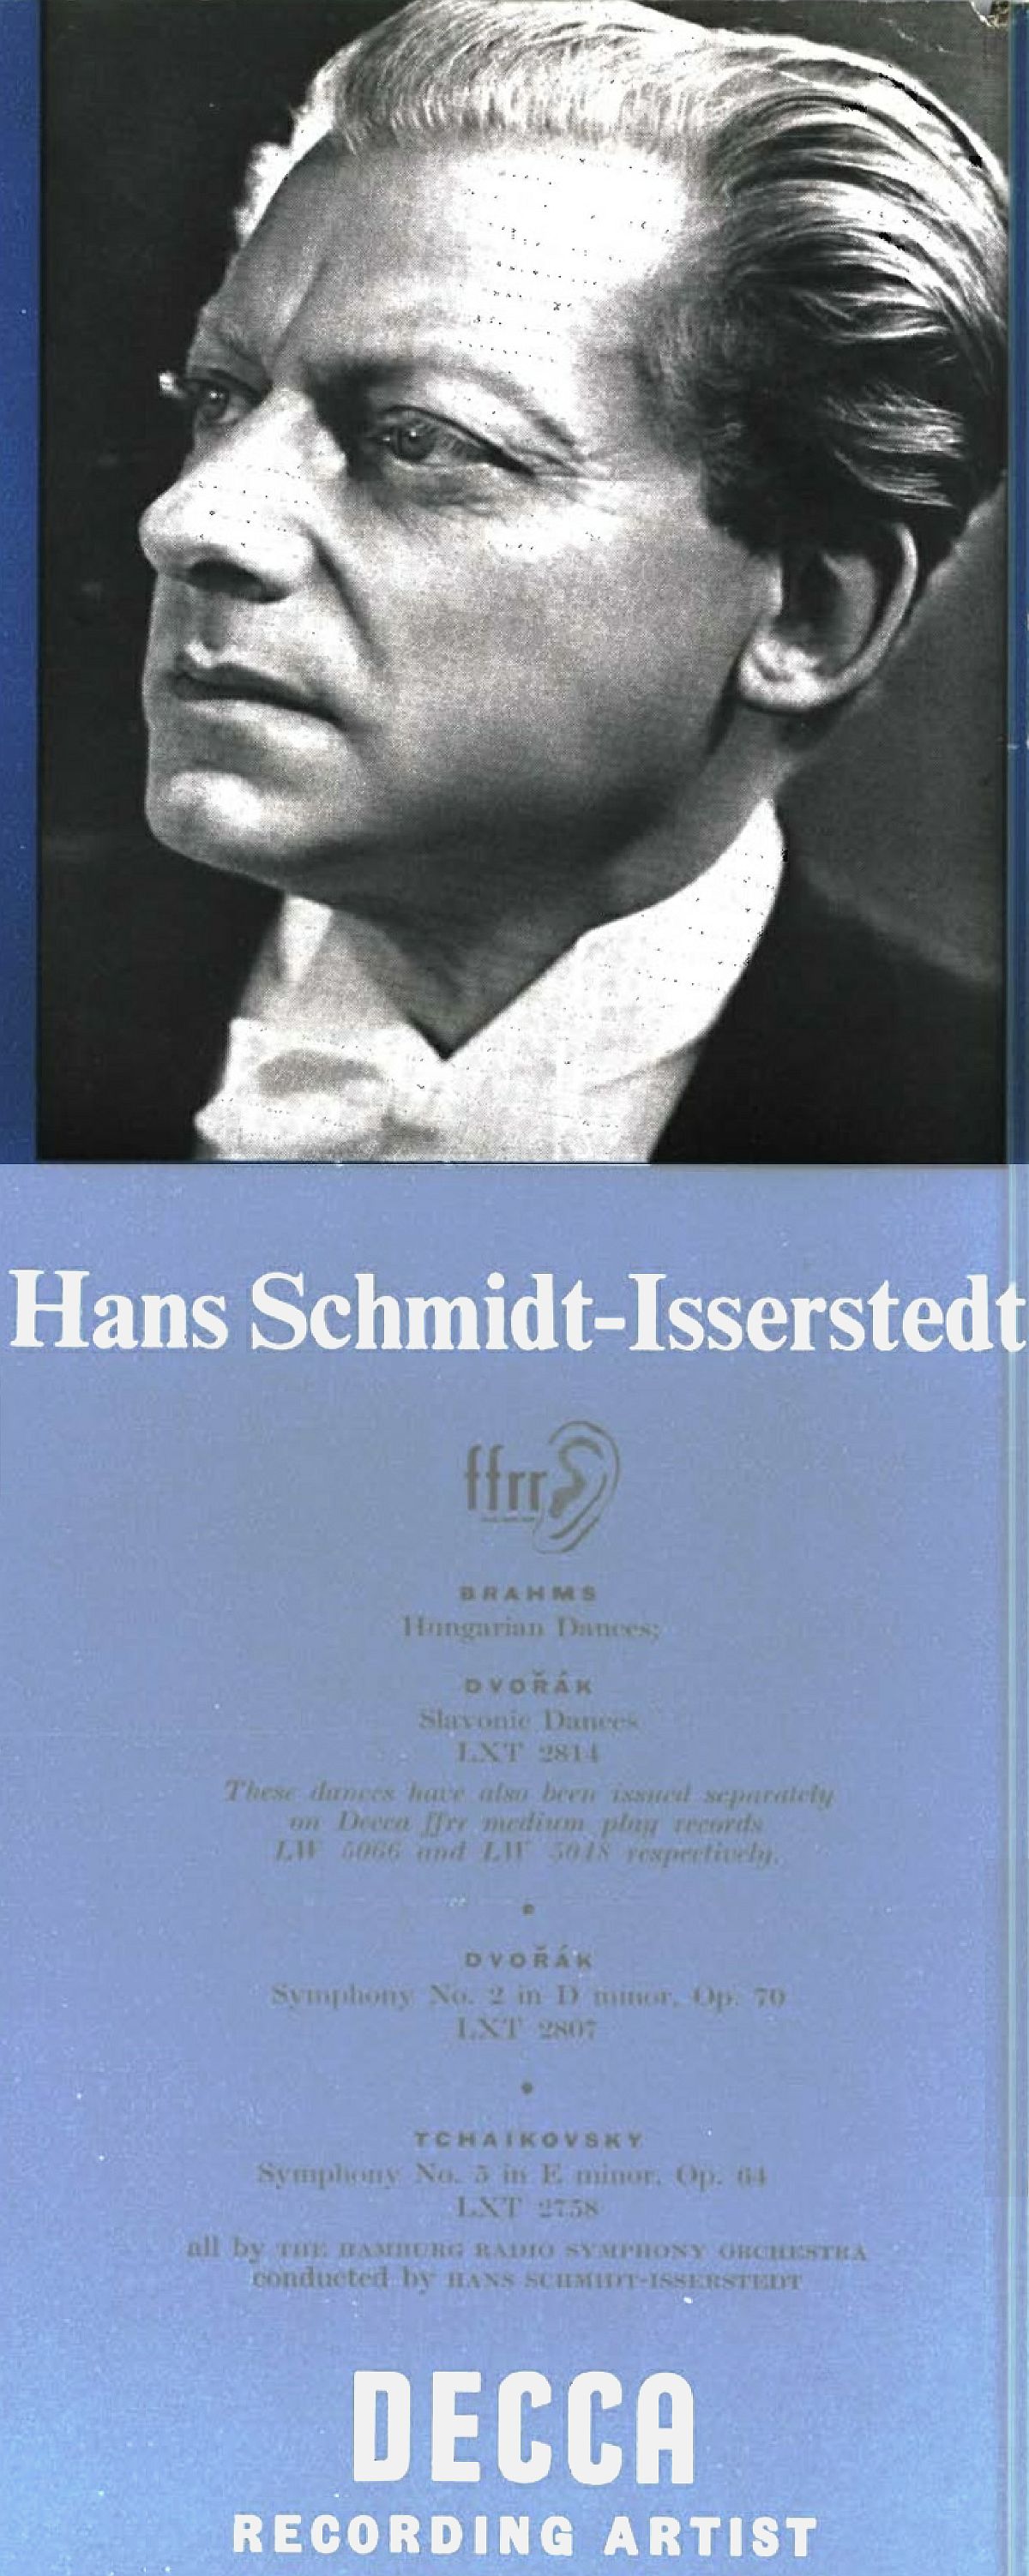 Hans Schmidt-Isserstedt, insert publicitaire Decca paru dans la revue The Gramophone en février 1954, clicquer pour une vue agrandie